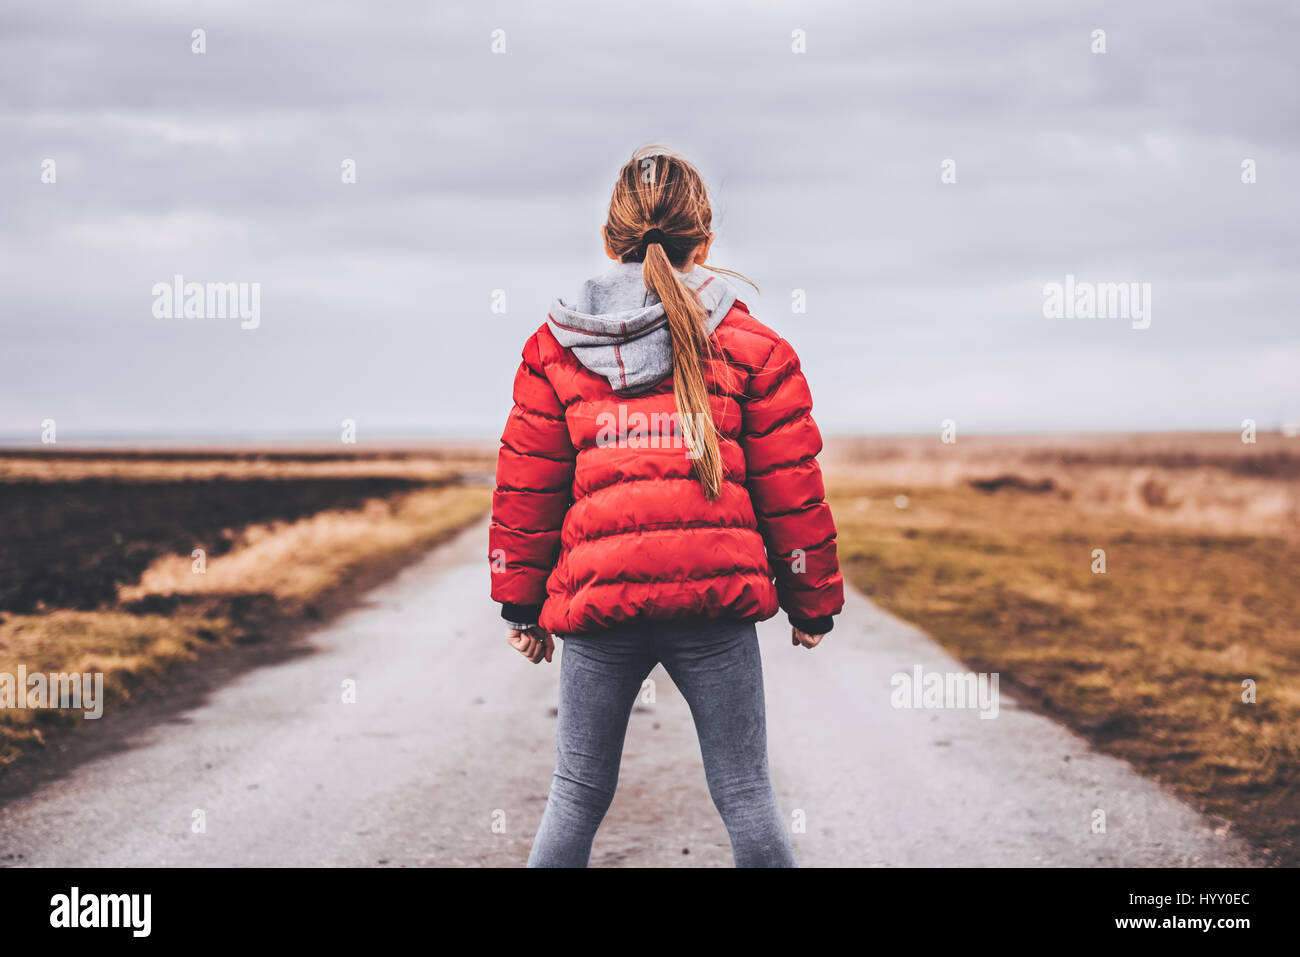 Mädchen tragen rote Jacke steht alleine auf der Straße und man Entfernung  Stockfotografie - Alamy